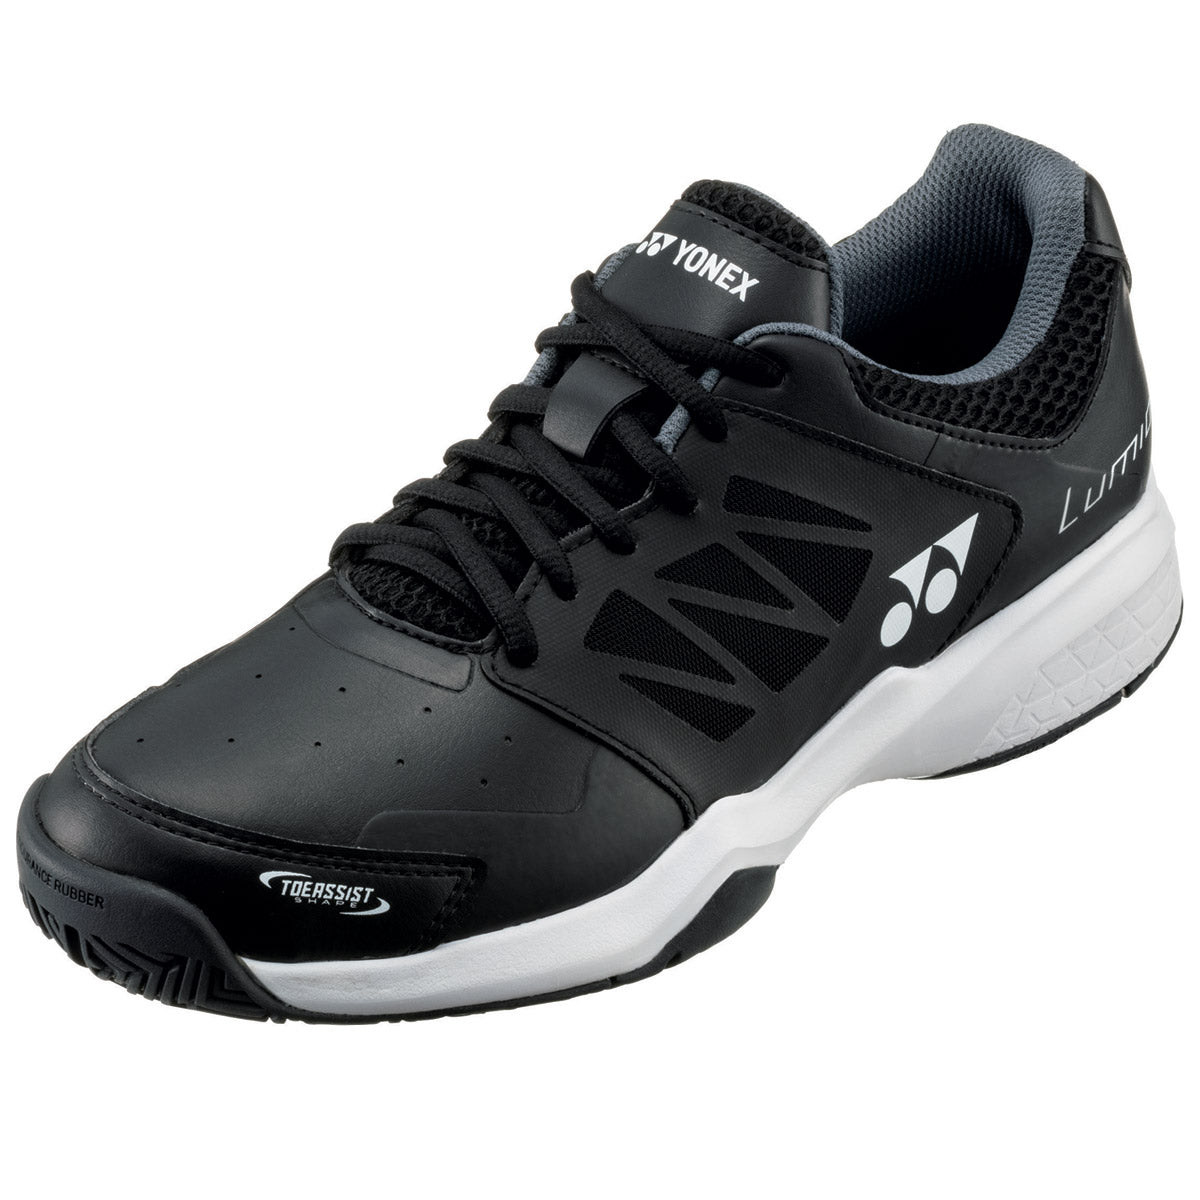 Yonex Lumio 3 Mens Tennis Shoes - Black